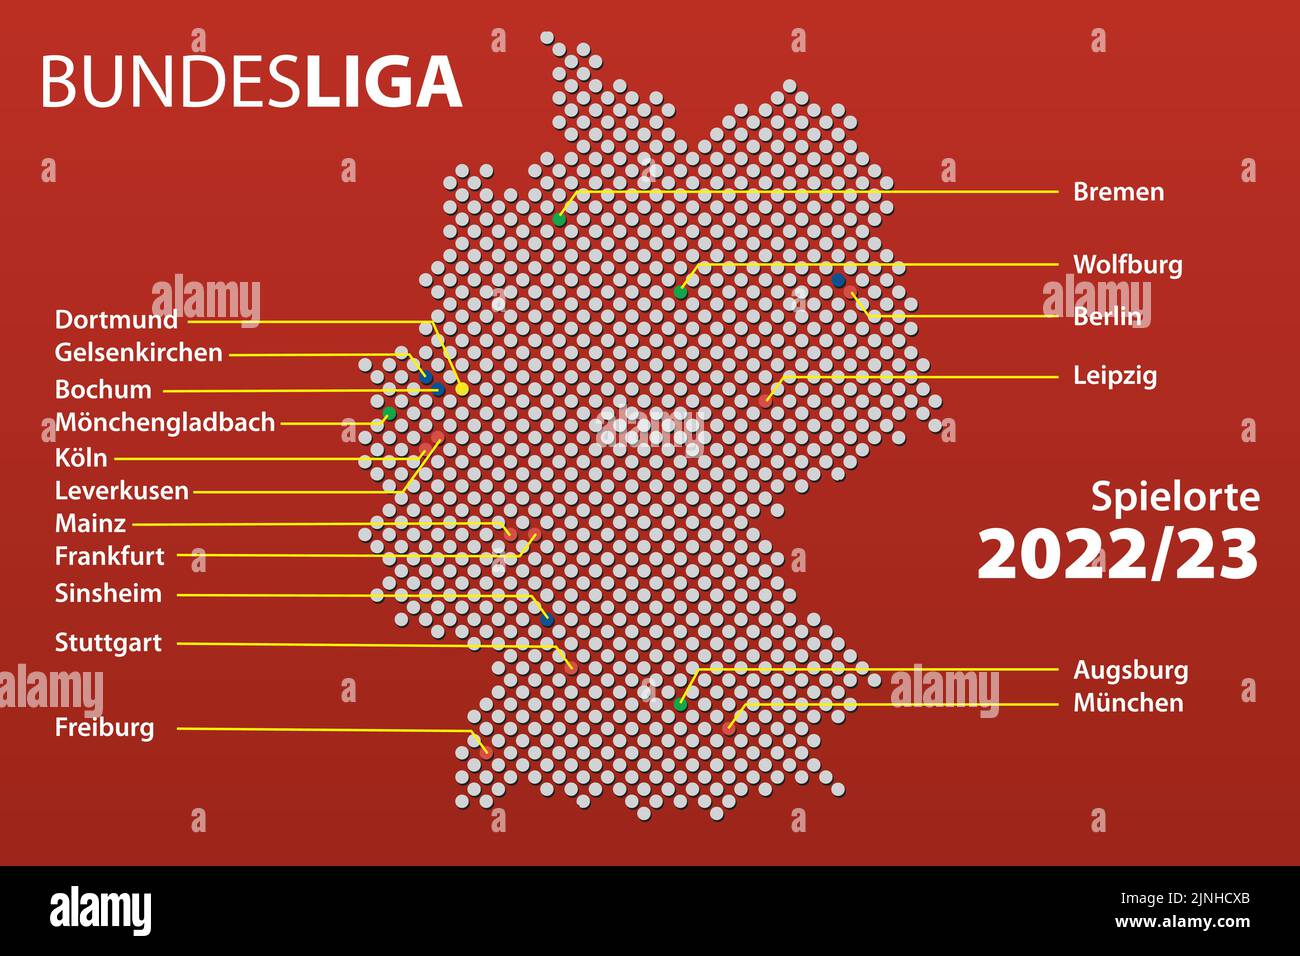 Carte des villes d'Allemagne avec les équipes la première ligue de football allemand, la Bundesliga dans la saison 2022/23 avec les noms de ville allemands. Illustration vectorielle Illustration de Vecteur